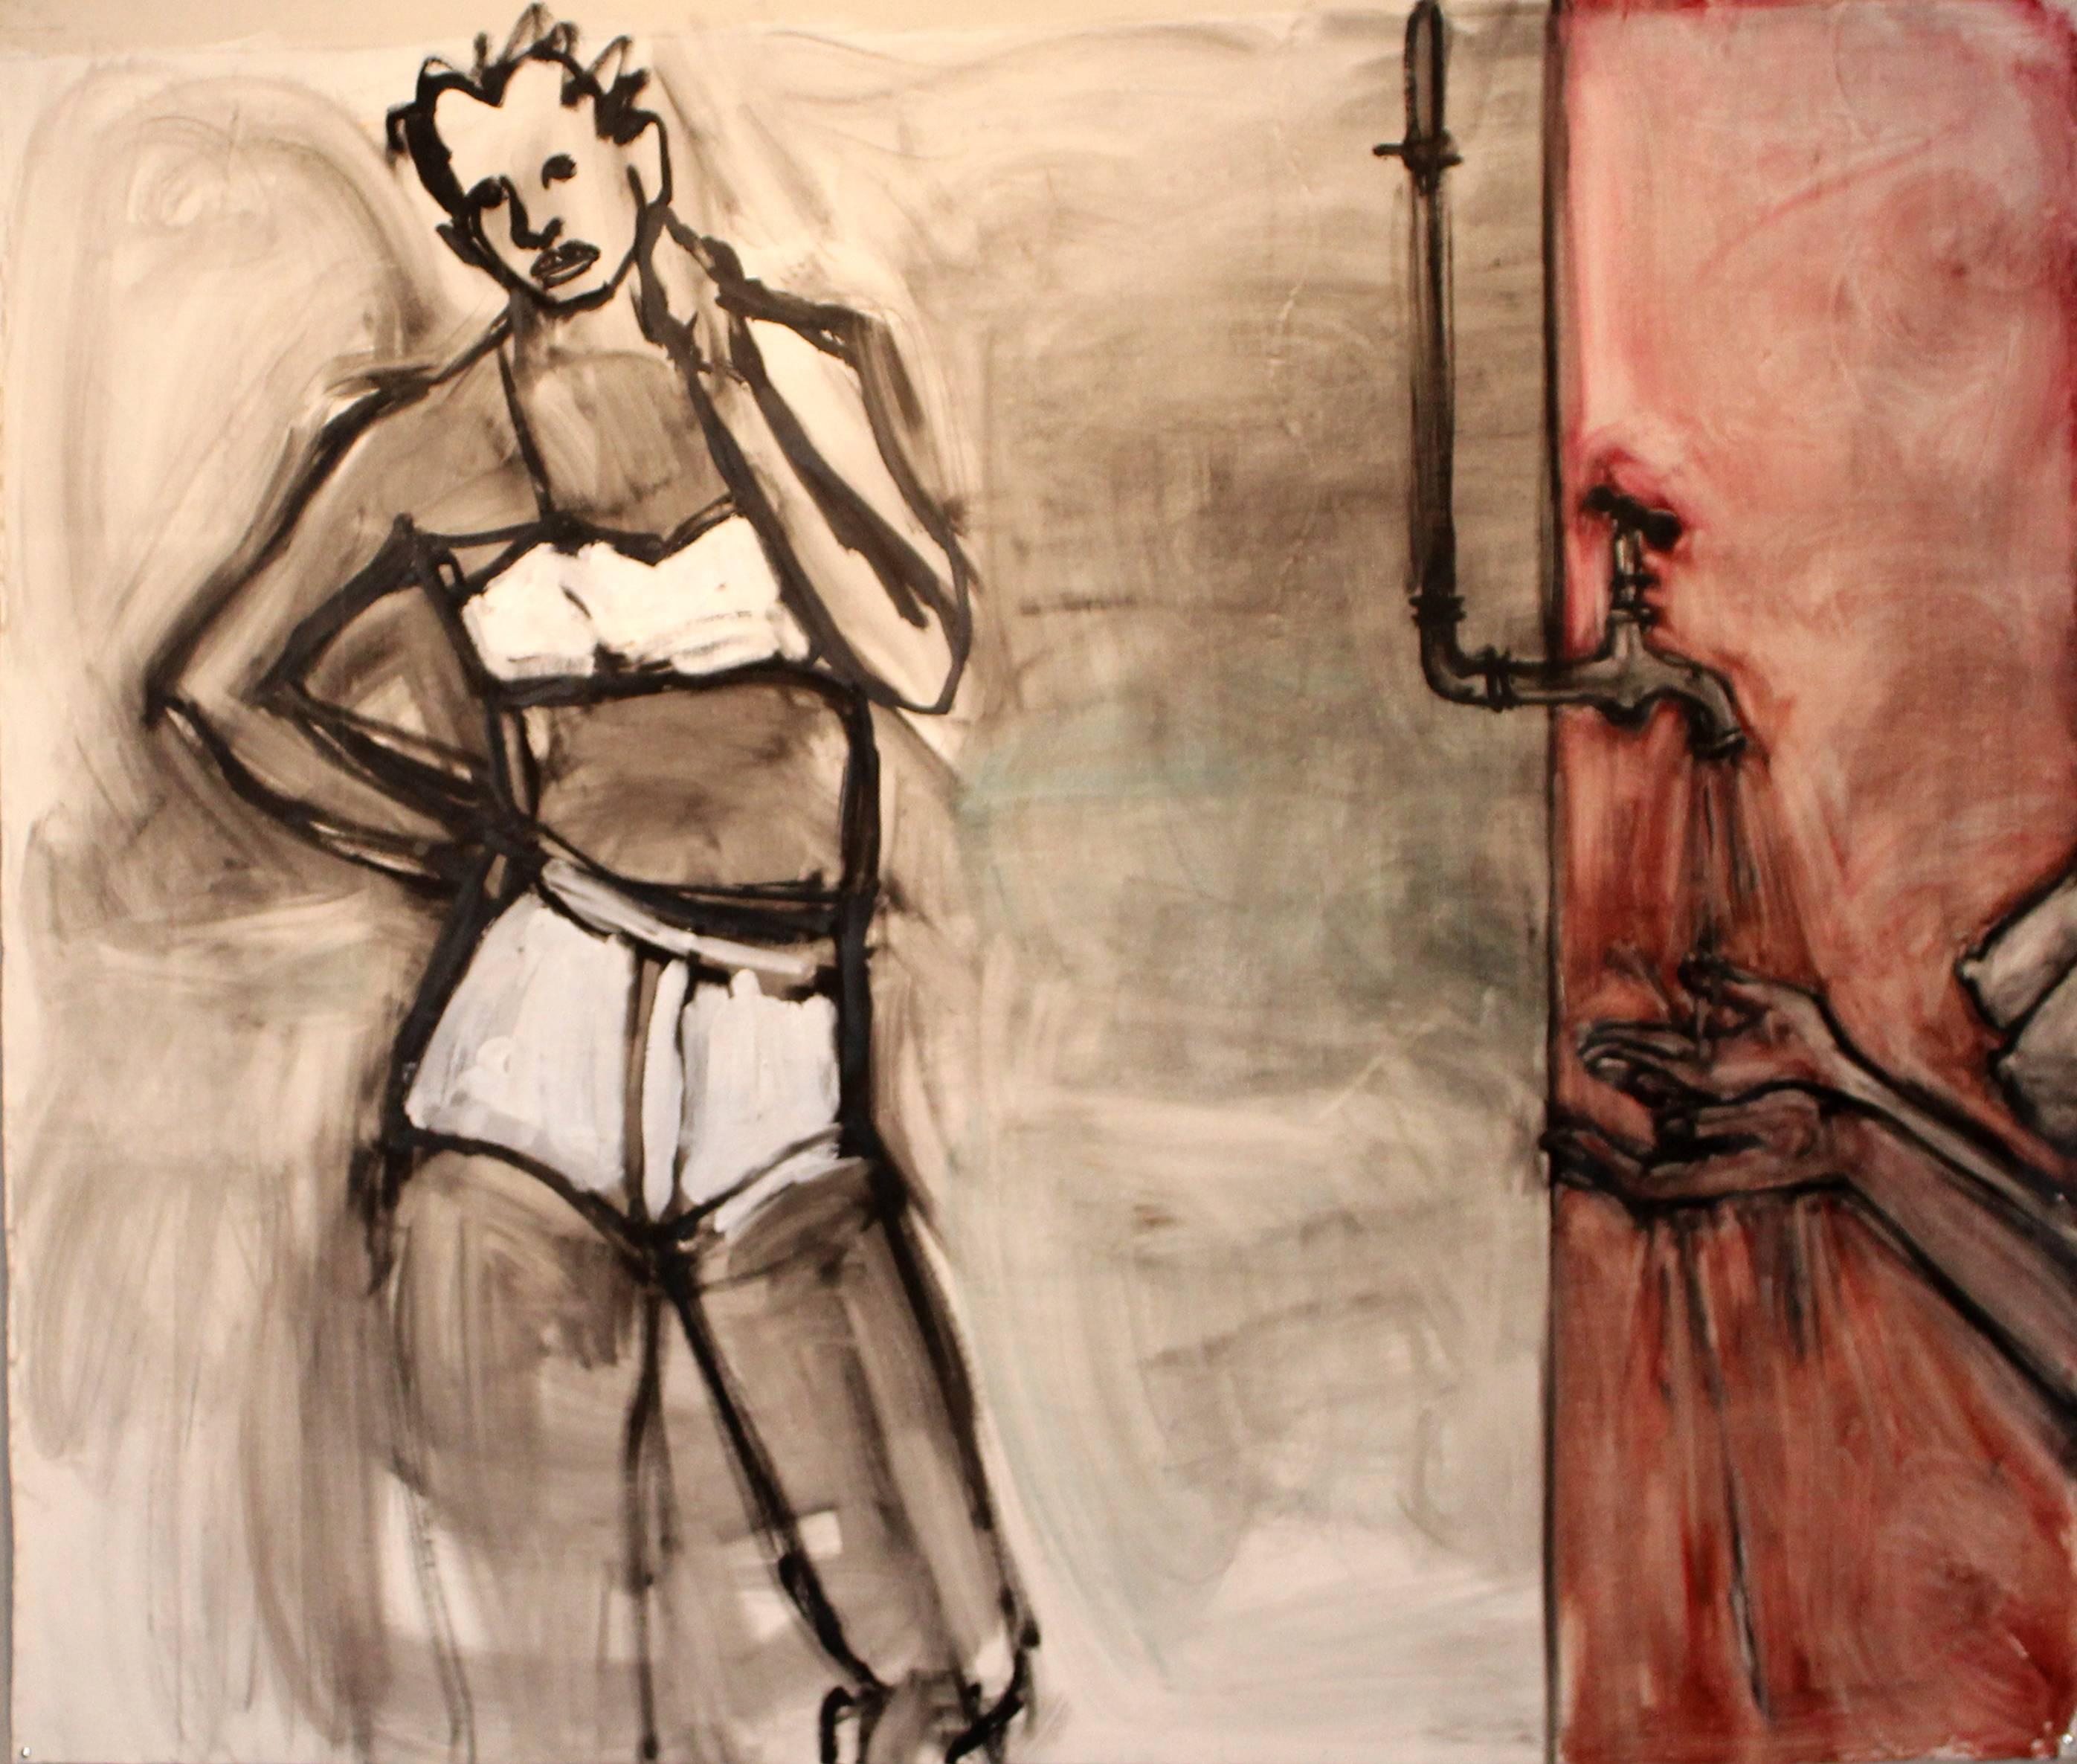 Jackie Felix Nude Painting – Ende Oktober/Anfang November